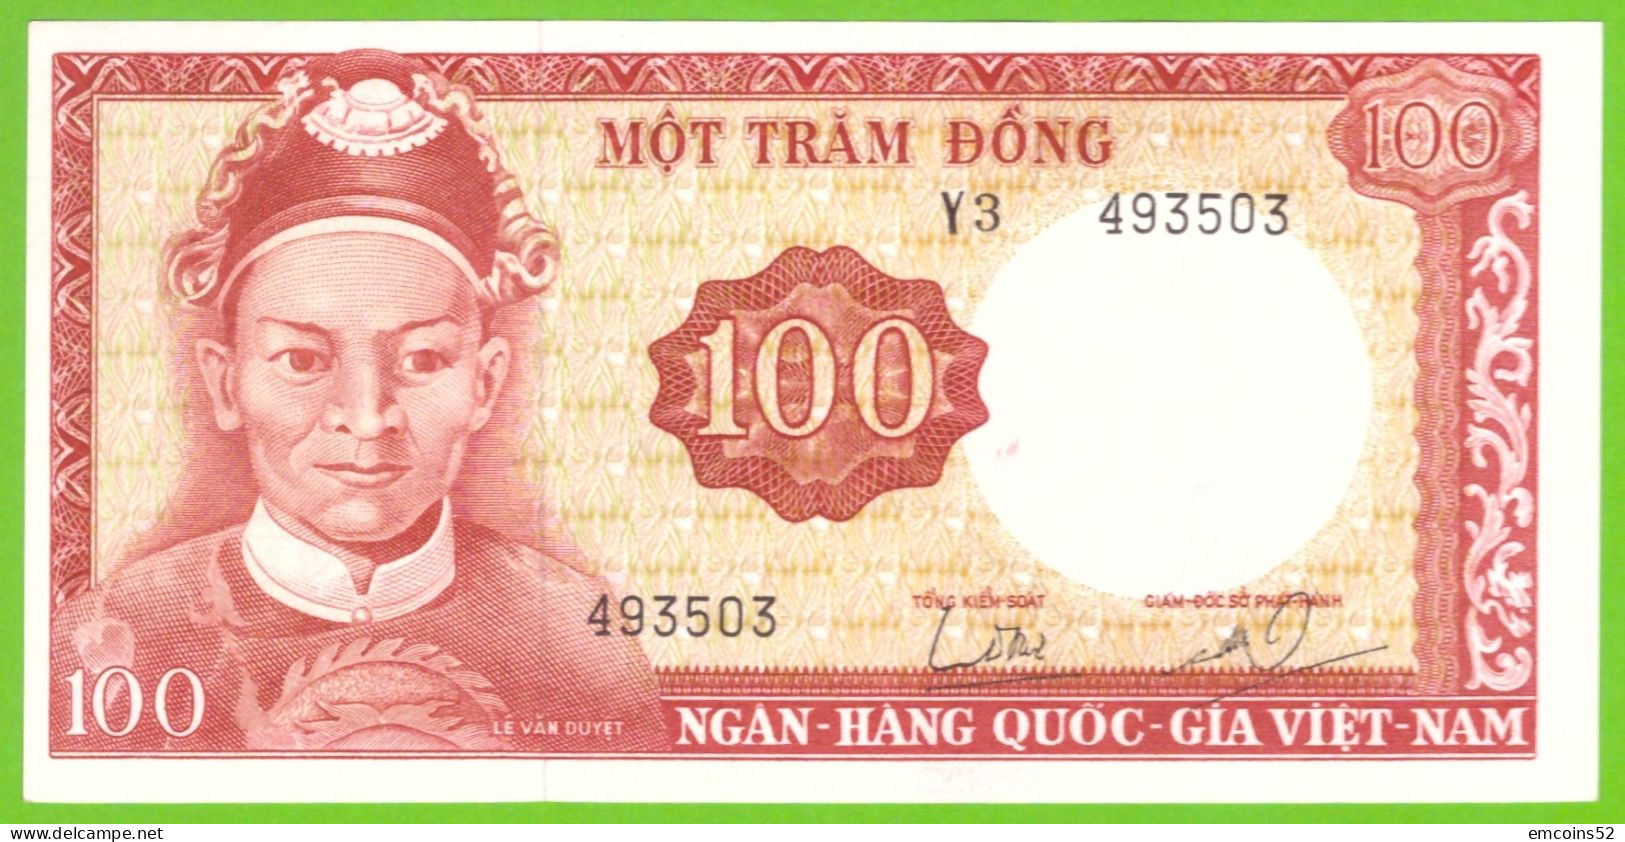 VIETNAM 100 DONG 1966  P-19b  UNC - Vietnam